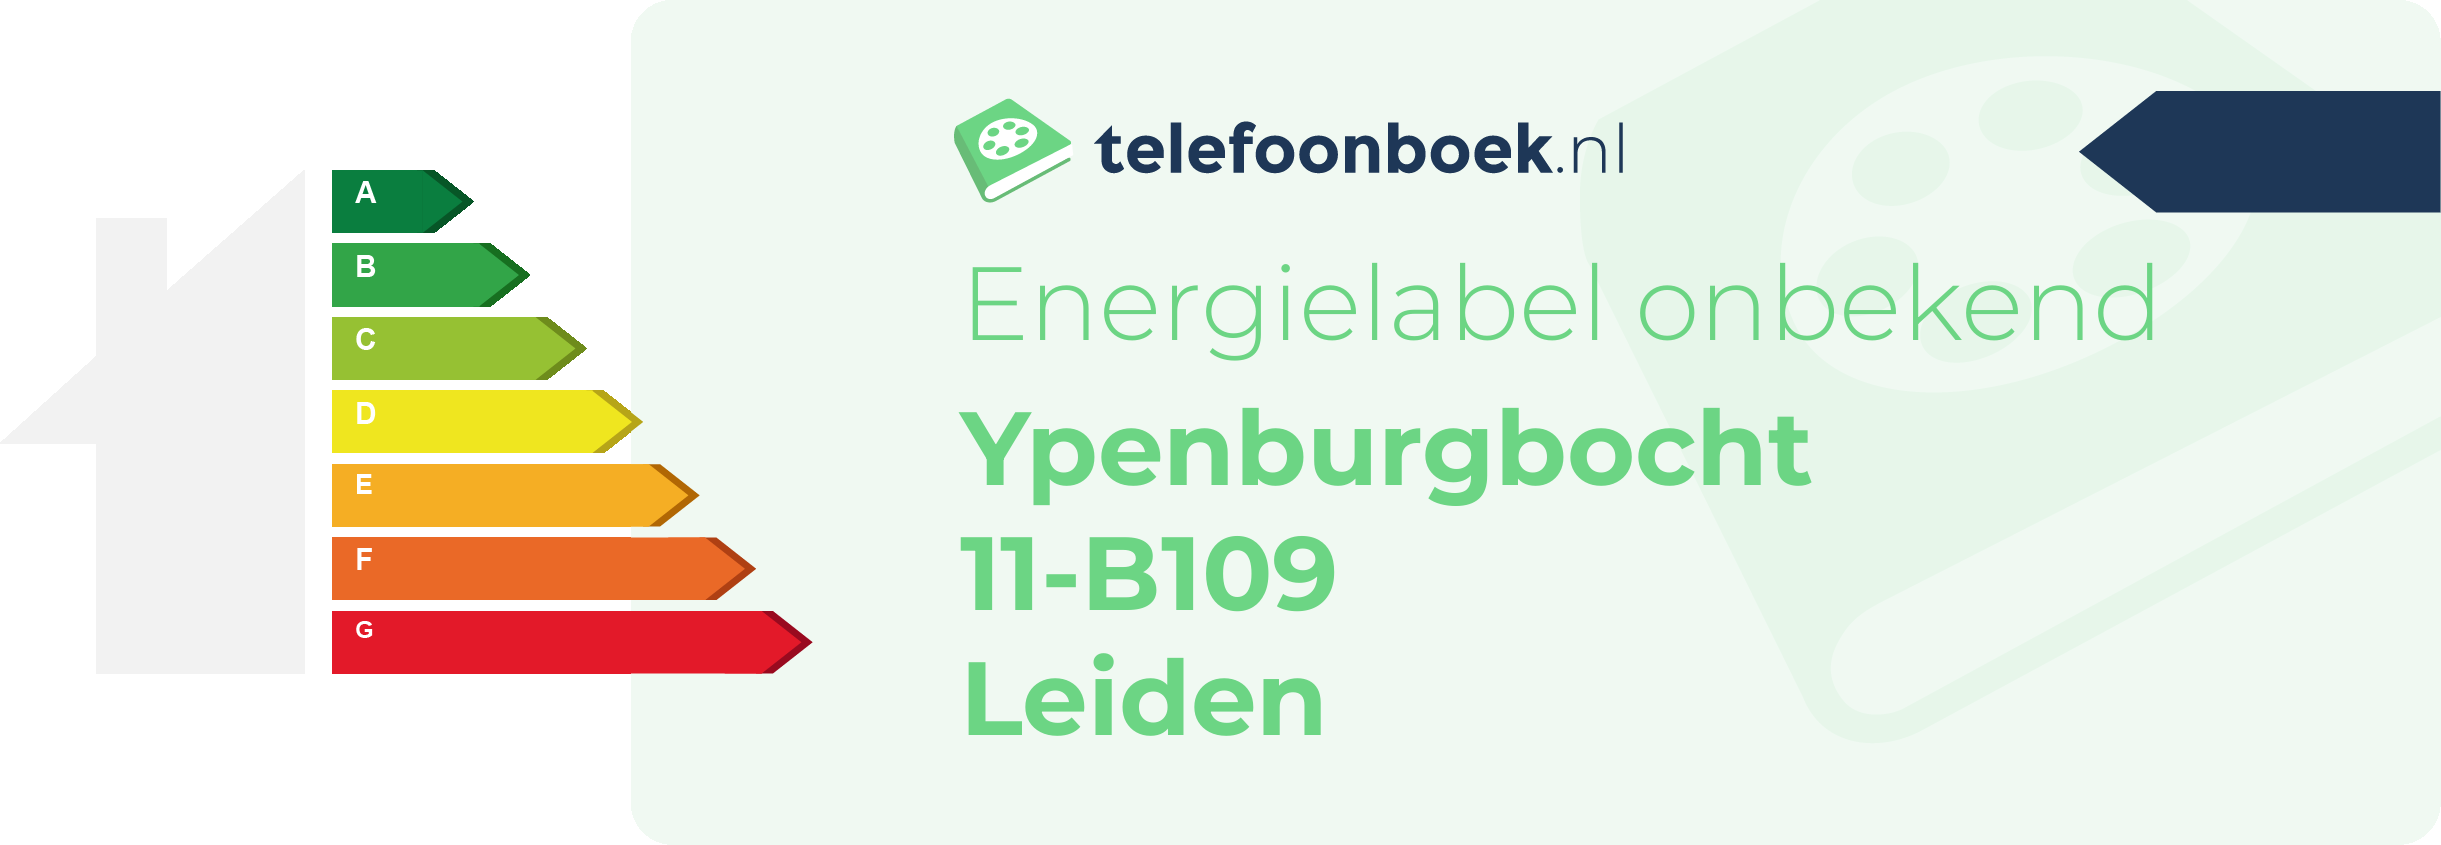 Energielabel Ypenburgbocht 11-B109 Leiden